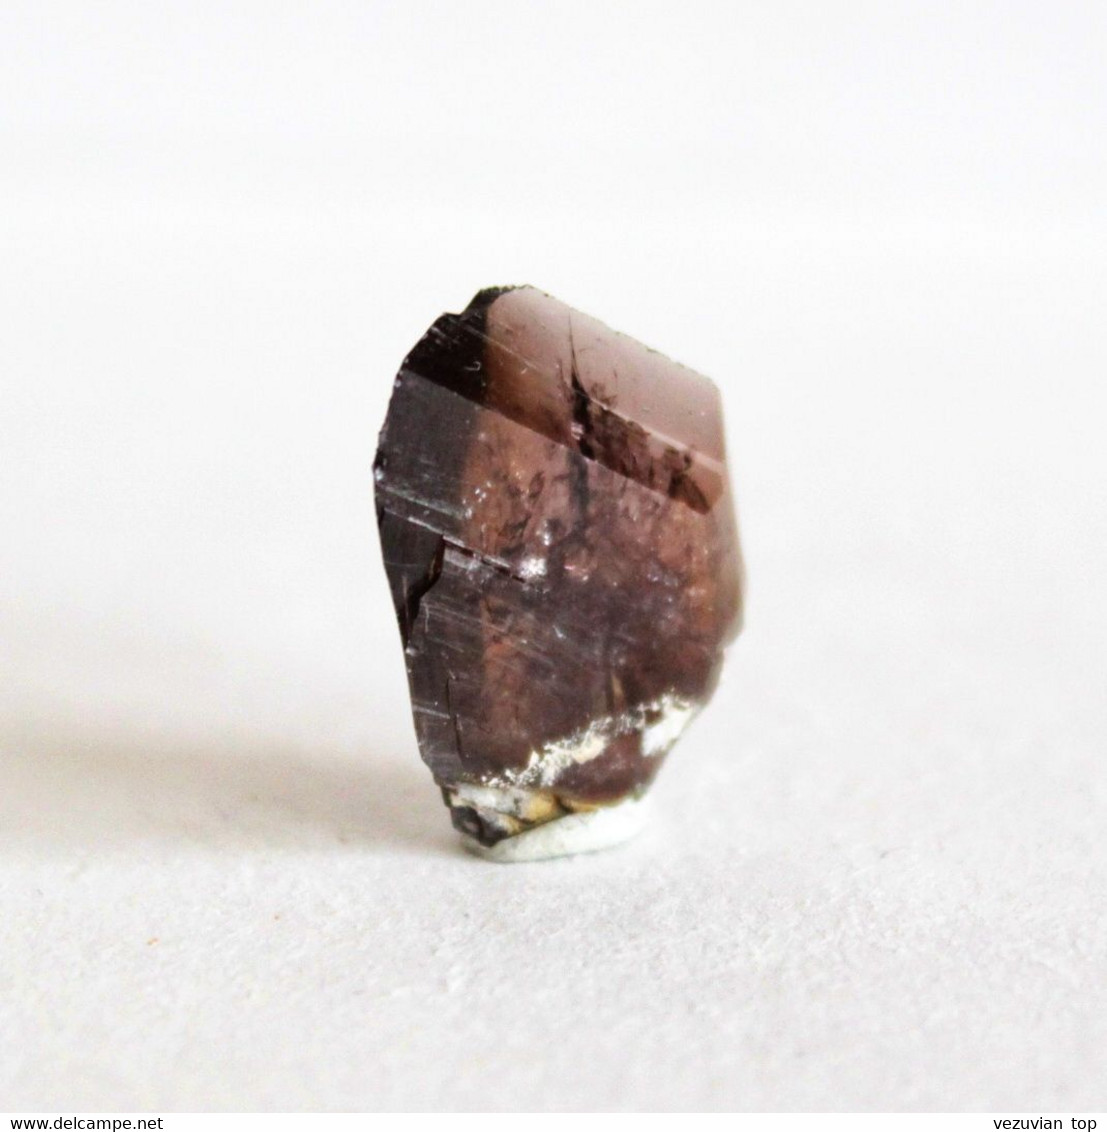 Axinite-(Fe) crystal